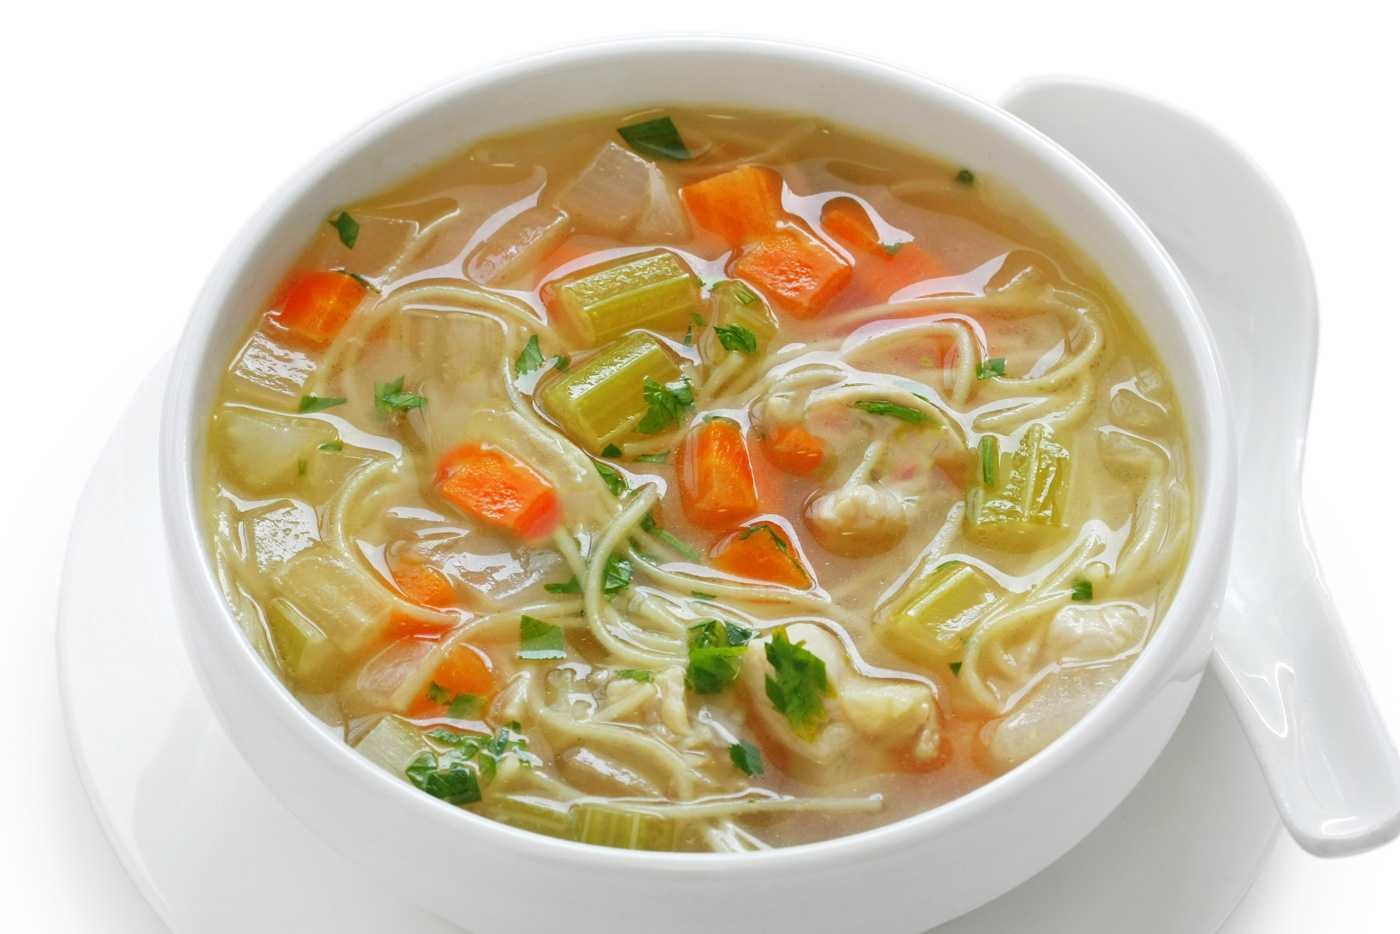 https://www.corriecooks.com/wp-content/uploads/2018/09/vegetable-noodle-soup.jpg